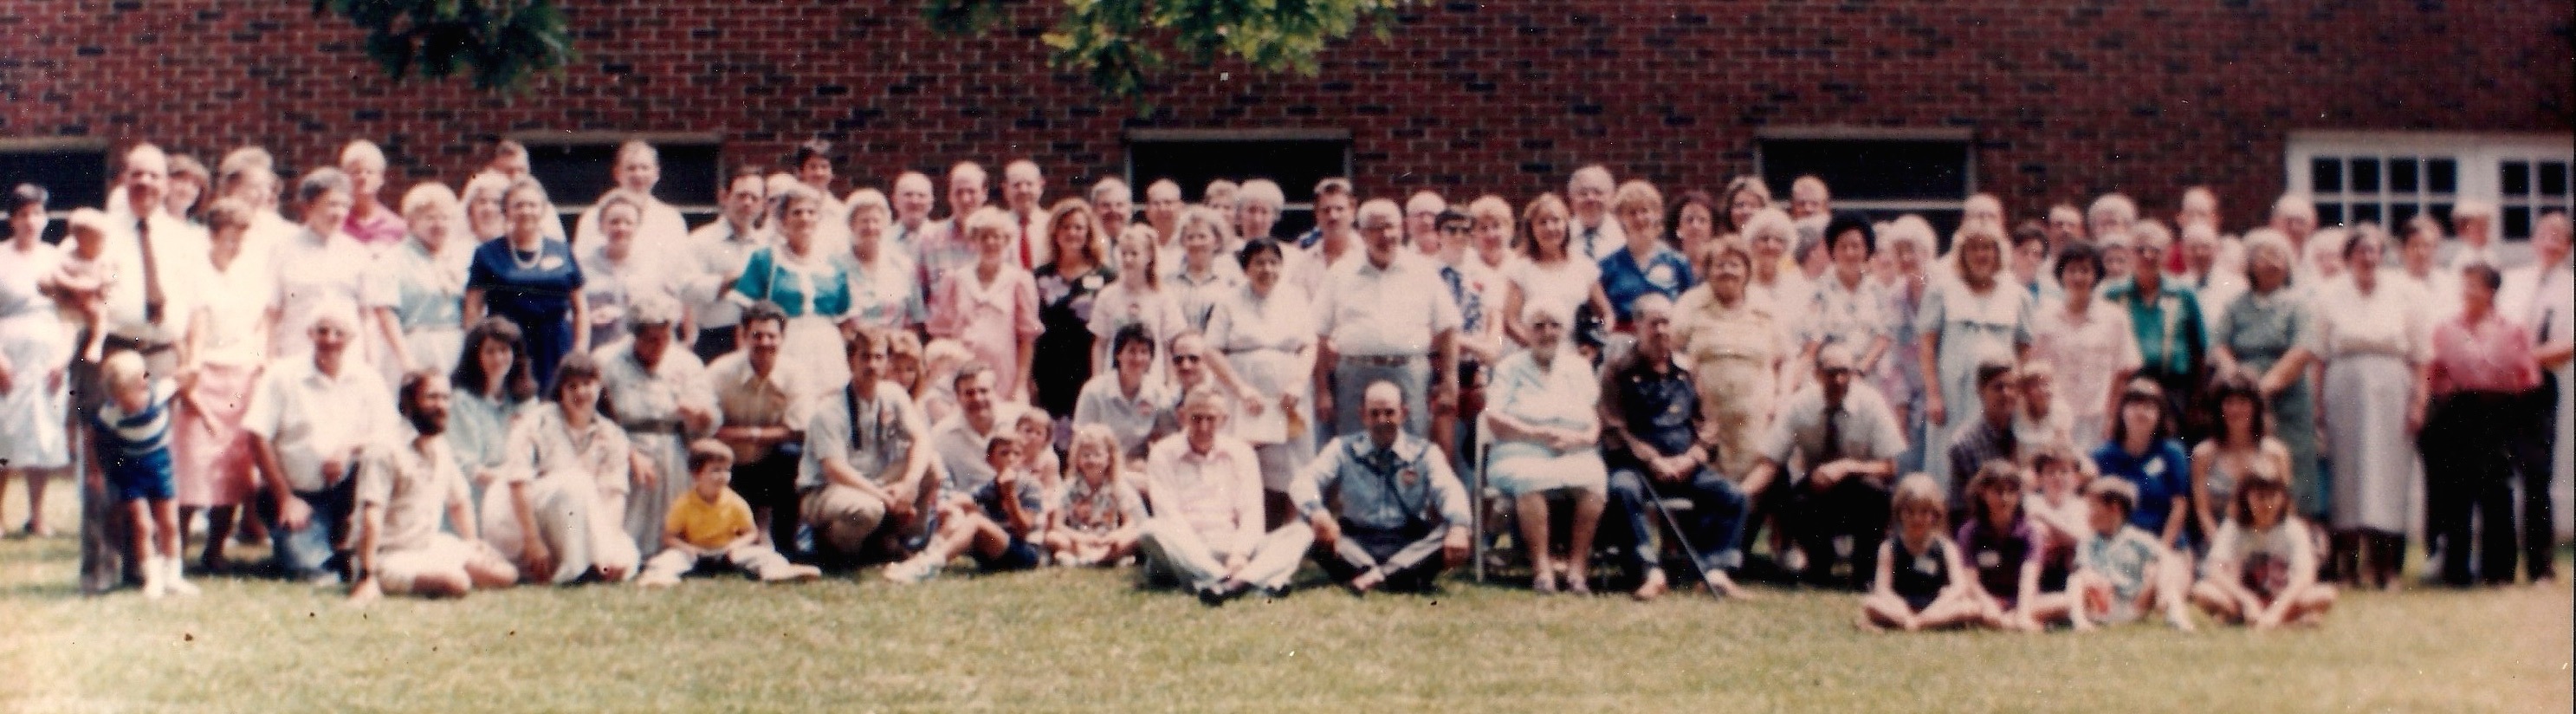 1988 Cline NC Reunion